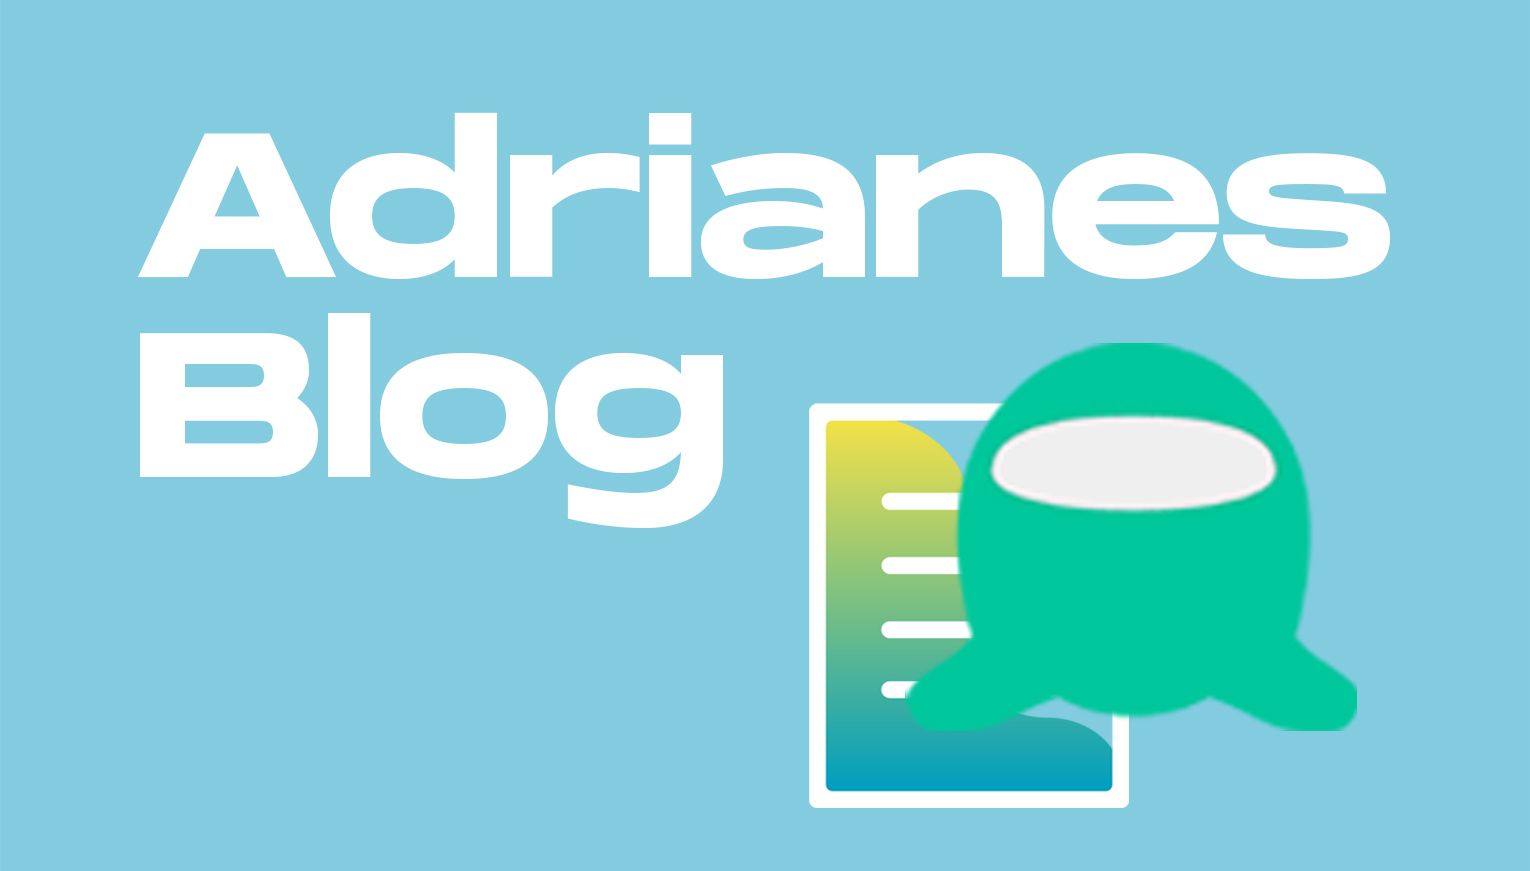 Adrianes Blog Kategorie-Icon